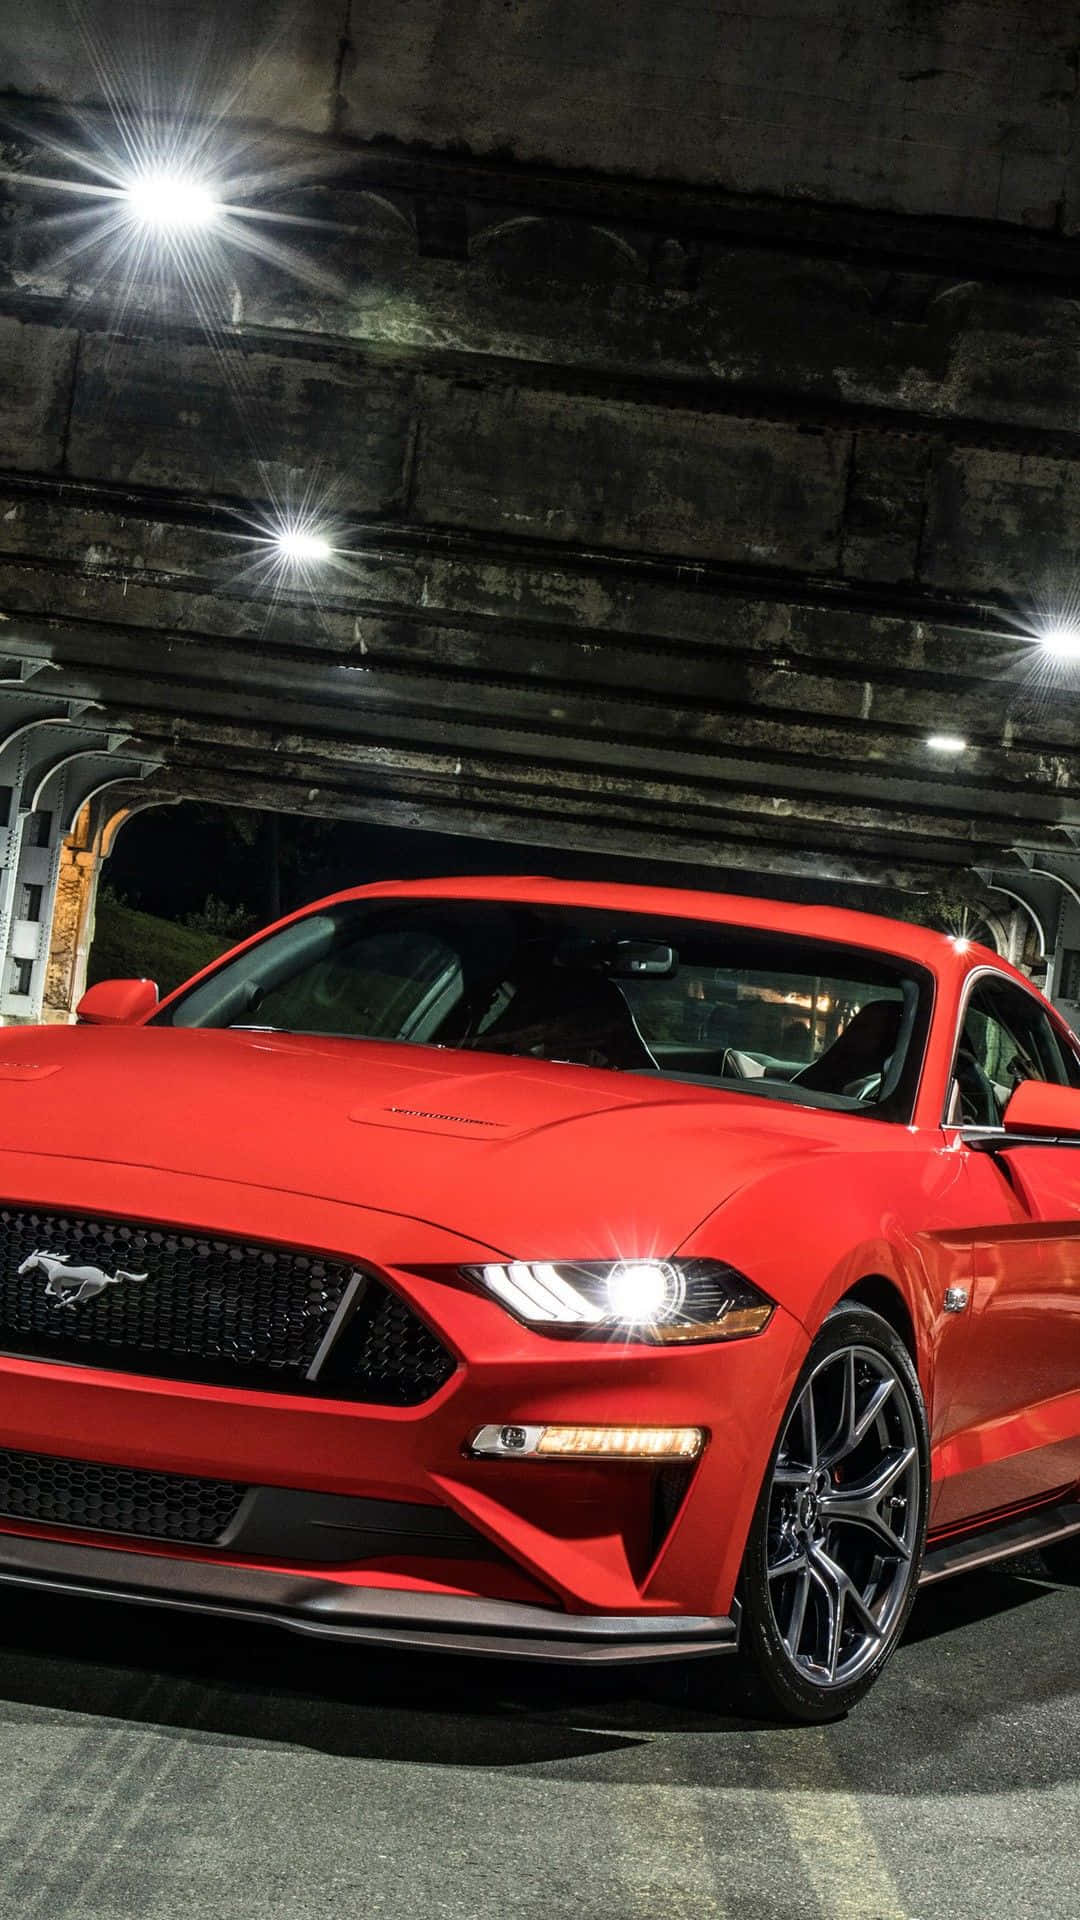 Oford Mustang Gt Vermelho De 2019 Está Estacionado Em Um Túnel. Papel de Parede